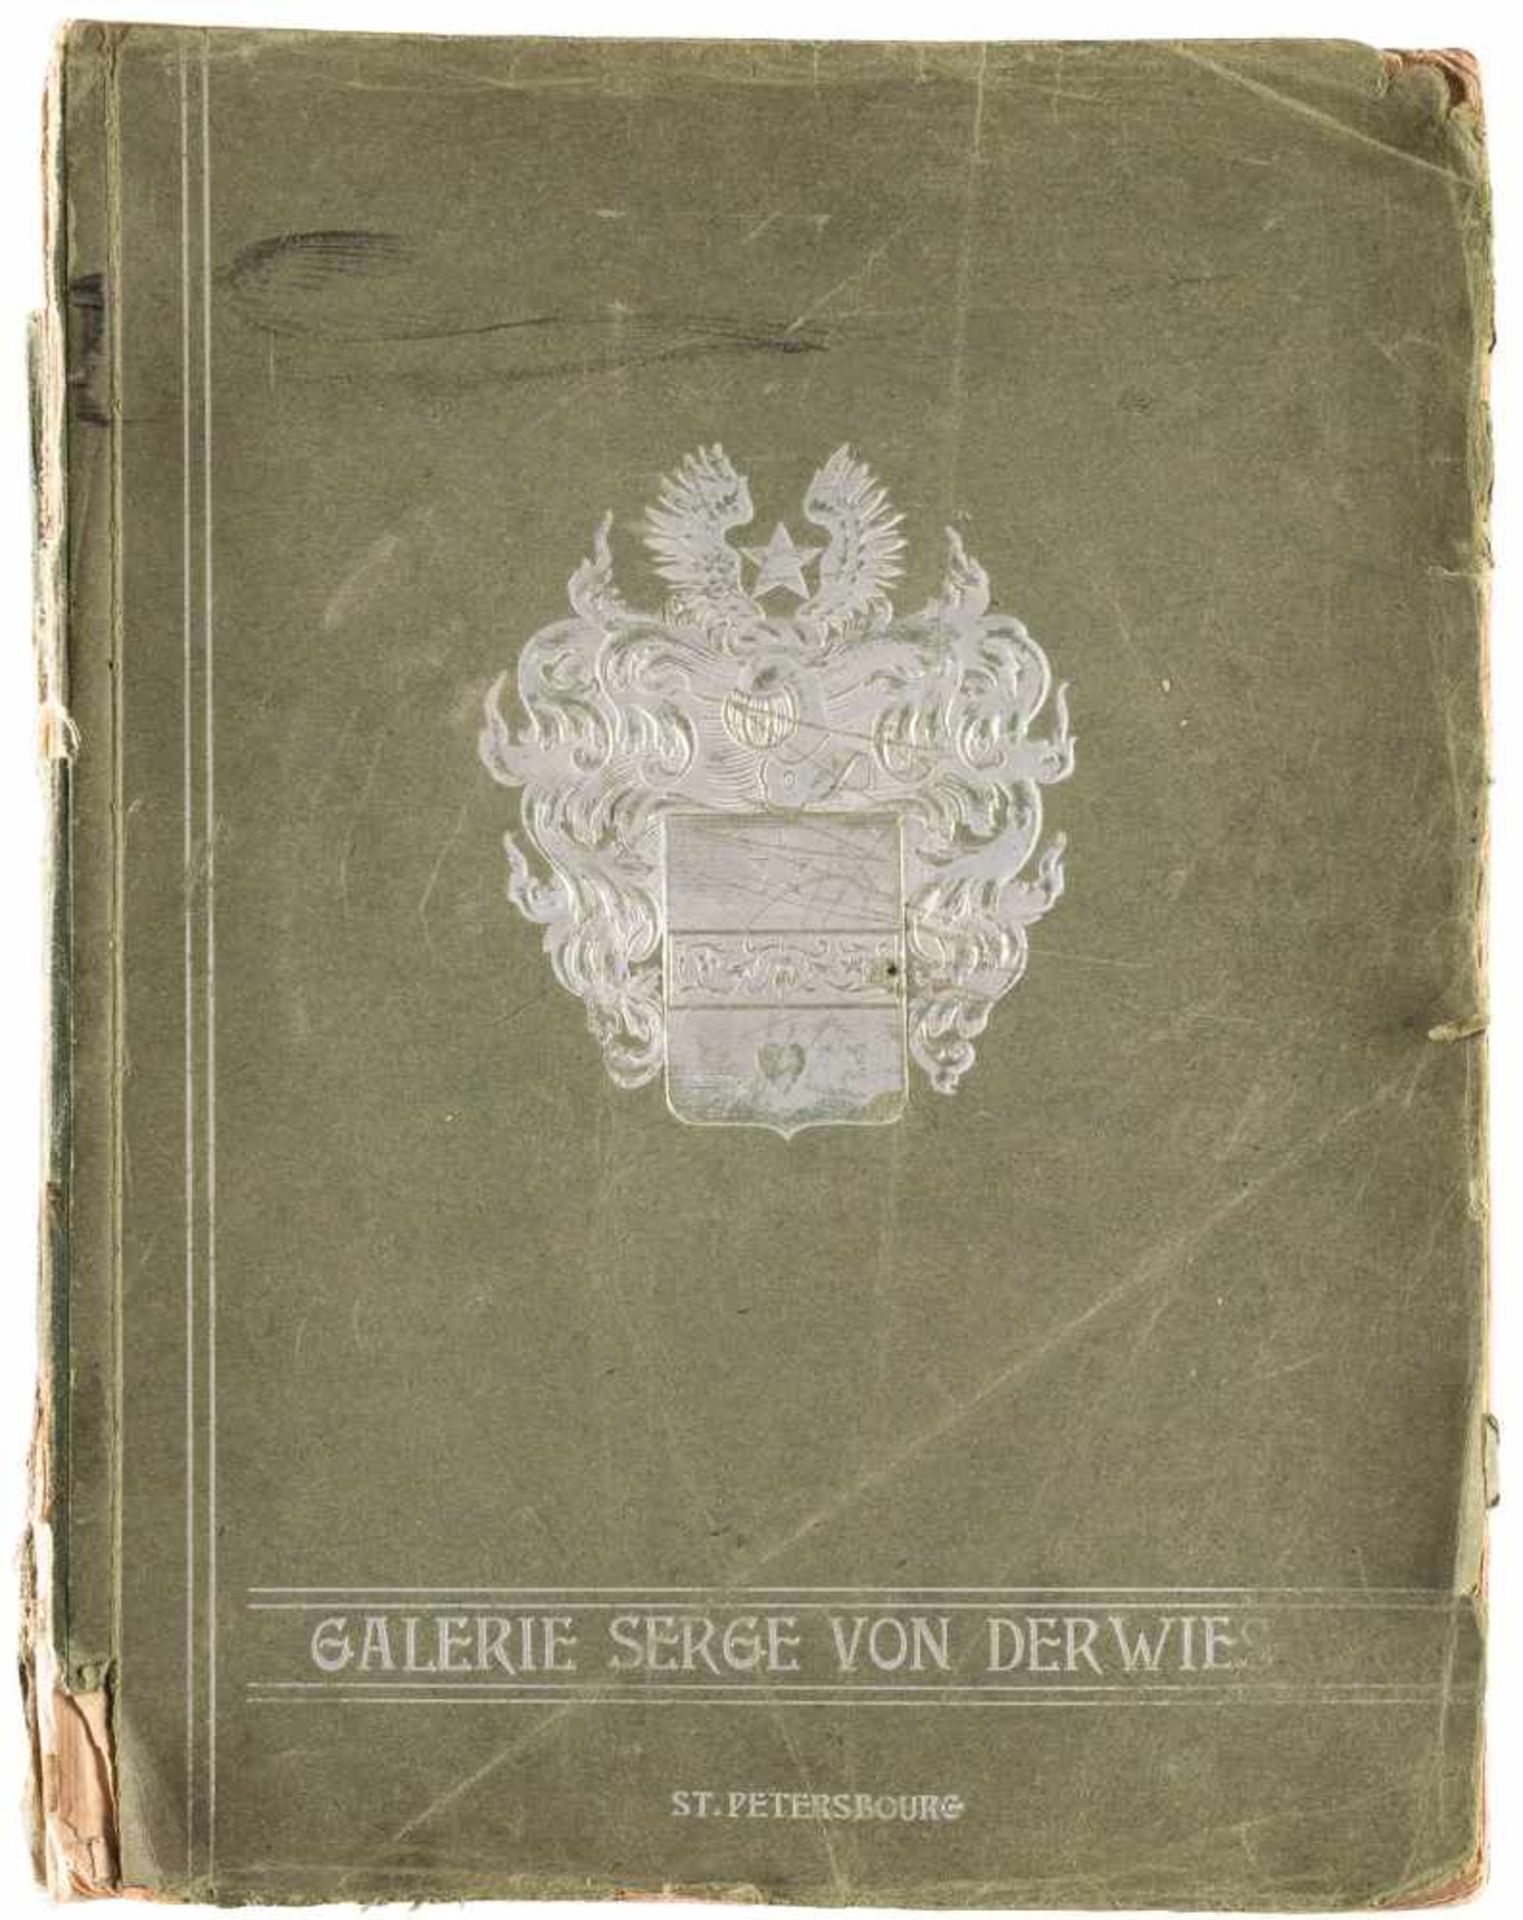 GEMÄLDEKATALOG DER GALERIE 'SERGE VON DERWIES' Russland, St. Petersburg, 1904 Druck auf Papier, - Bild 2 aus 3